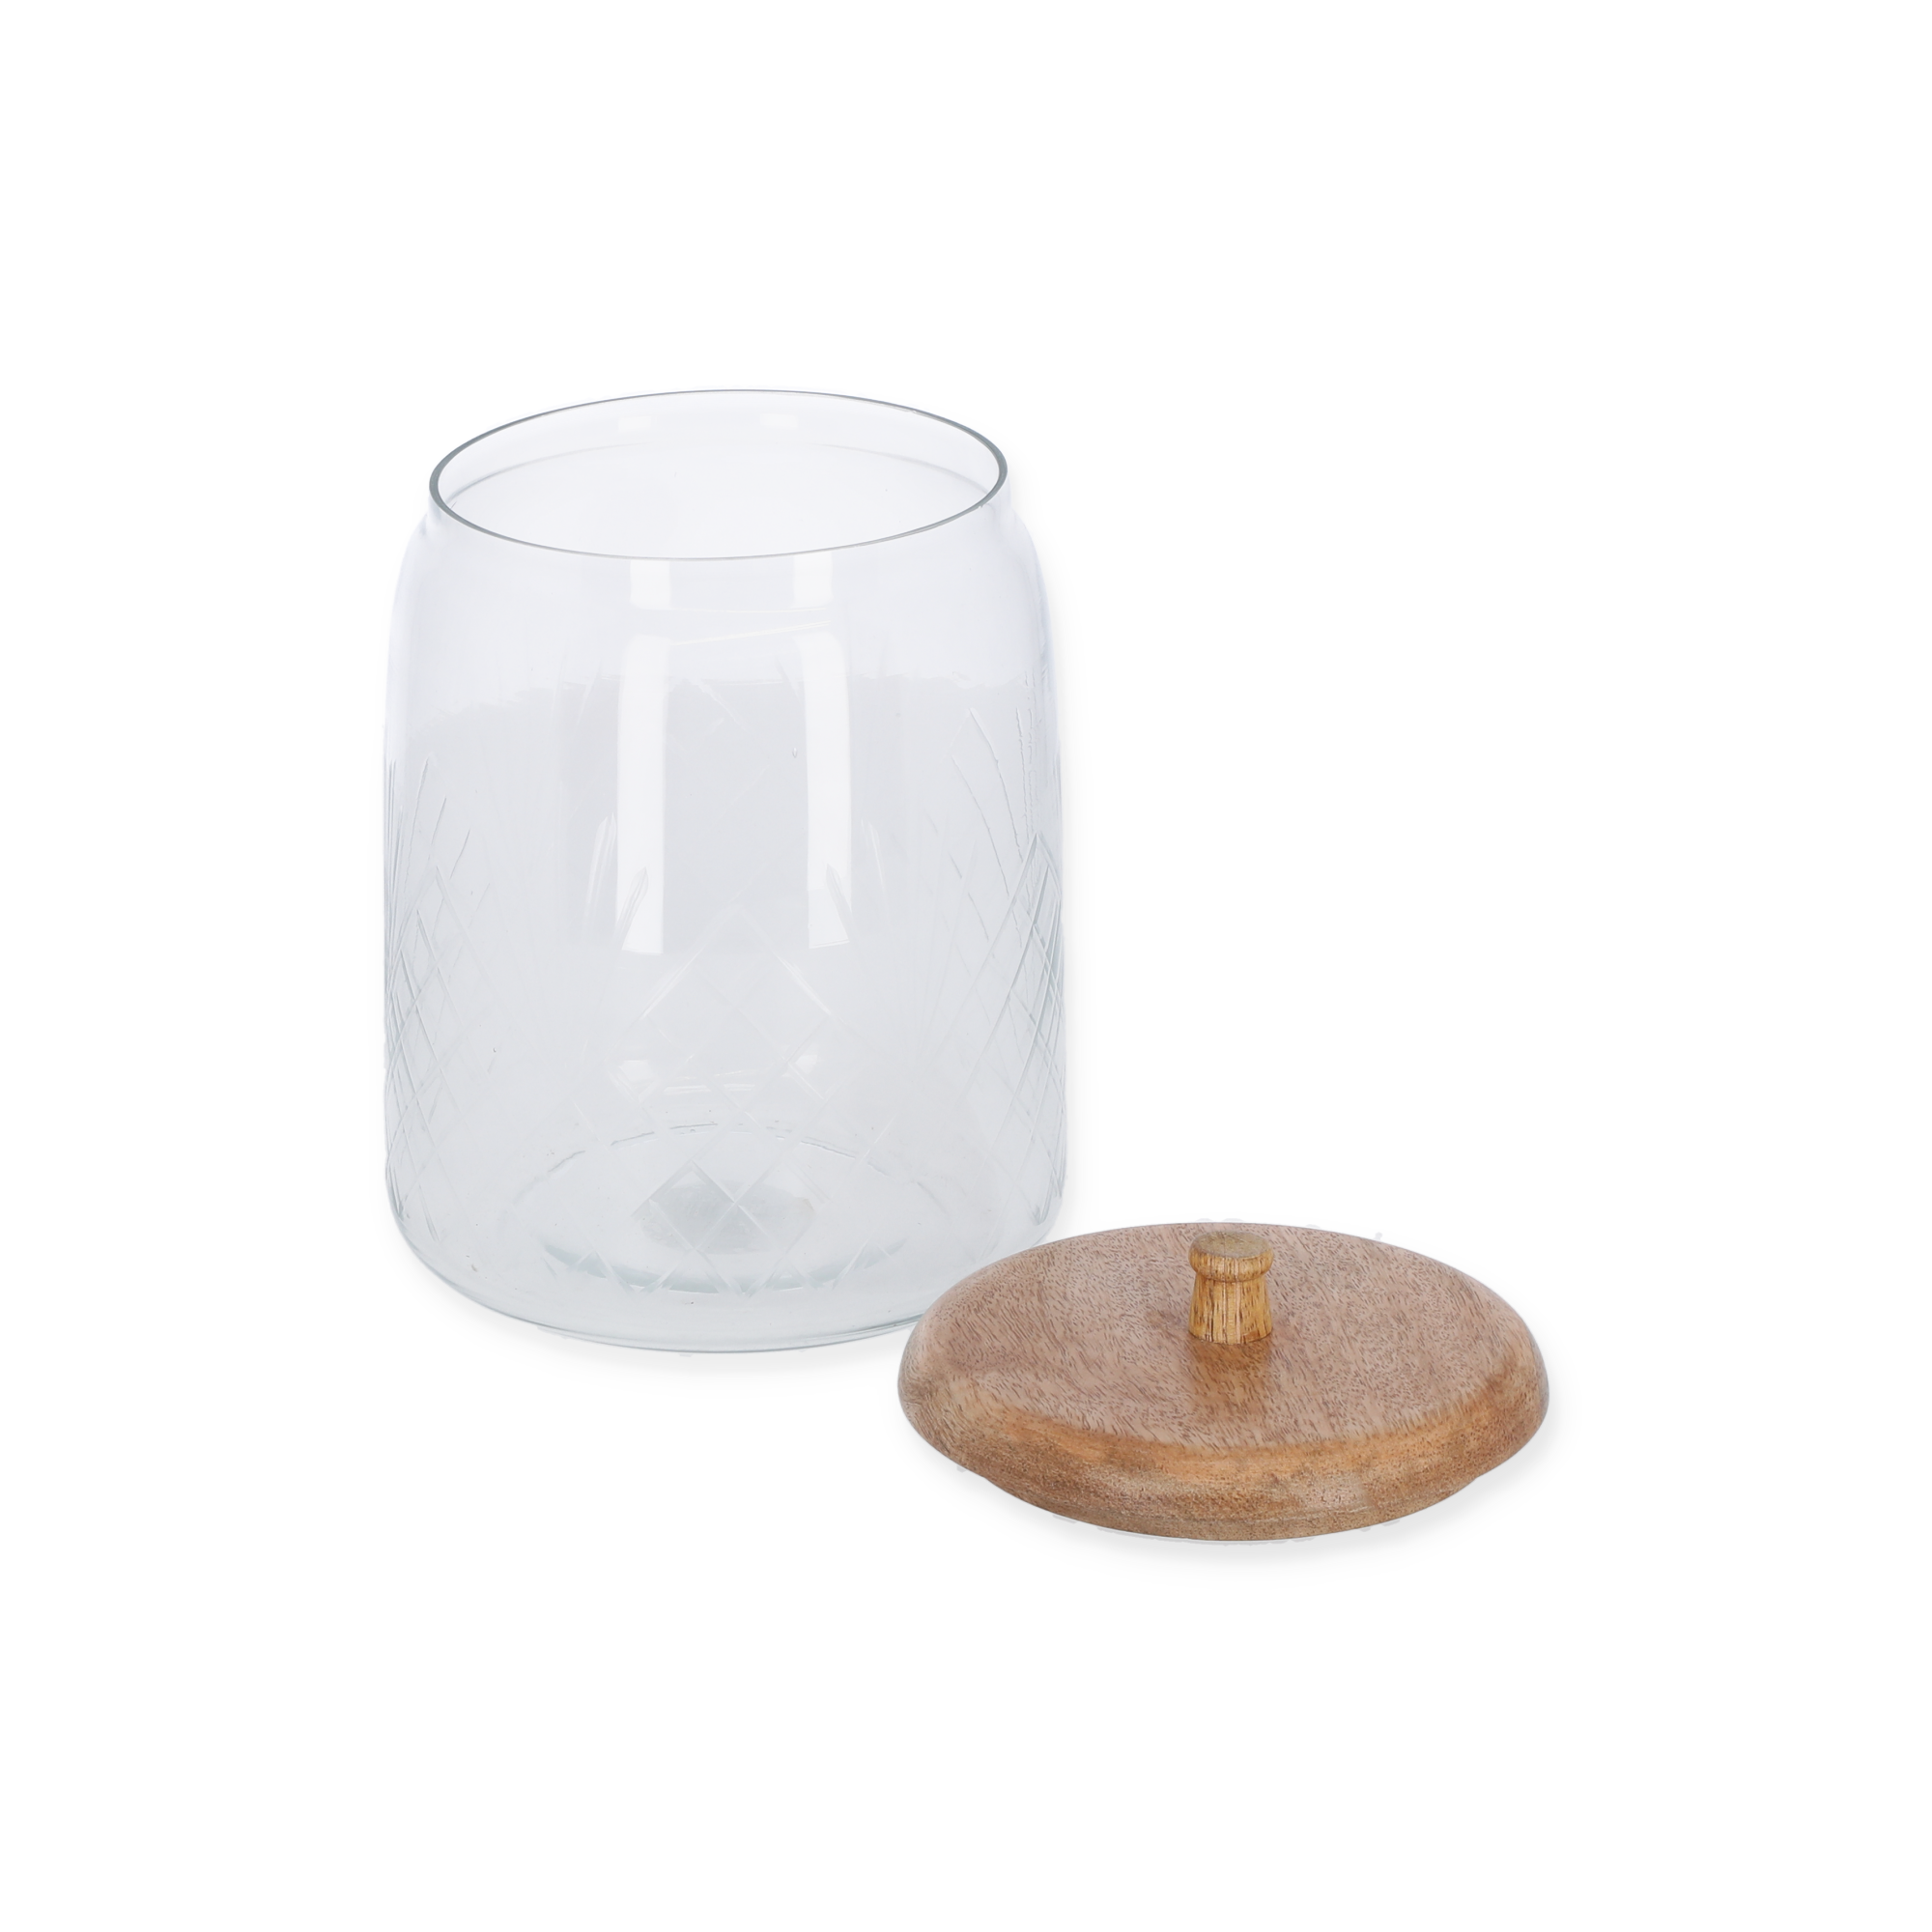 Dose Glas/Mangoholz transparent/braun Ø 10 x 16 cm + product picture